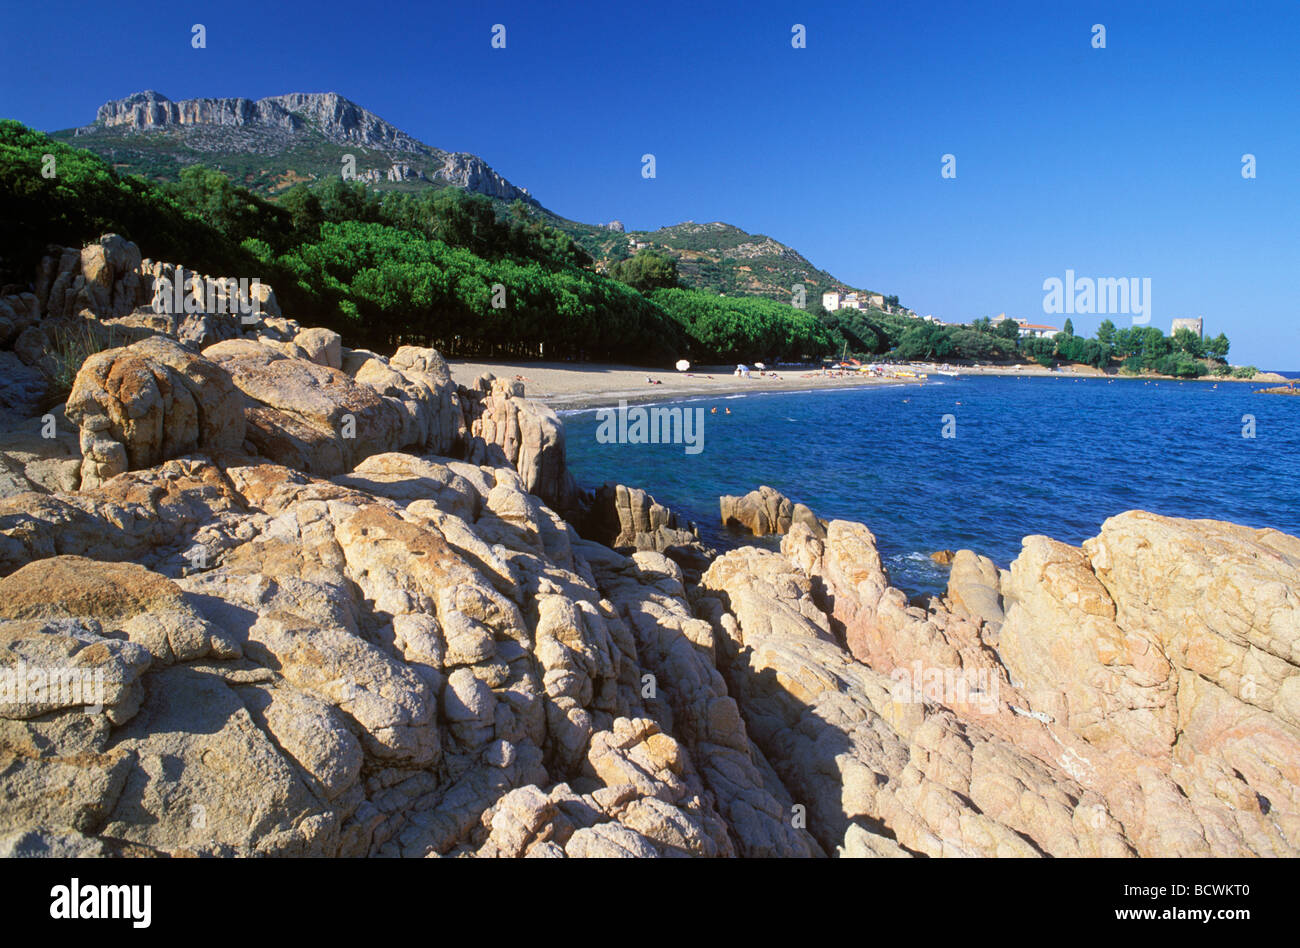 Rocky coast, Bay of Santa Maria Navarrese, Sardinia, Italy, Europe Stock Photo